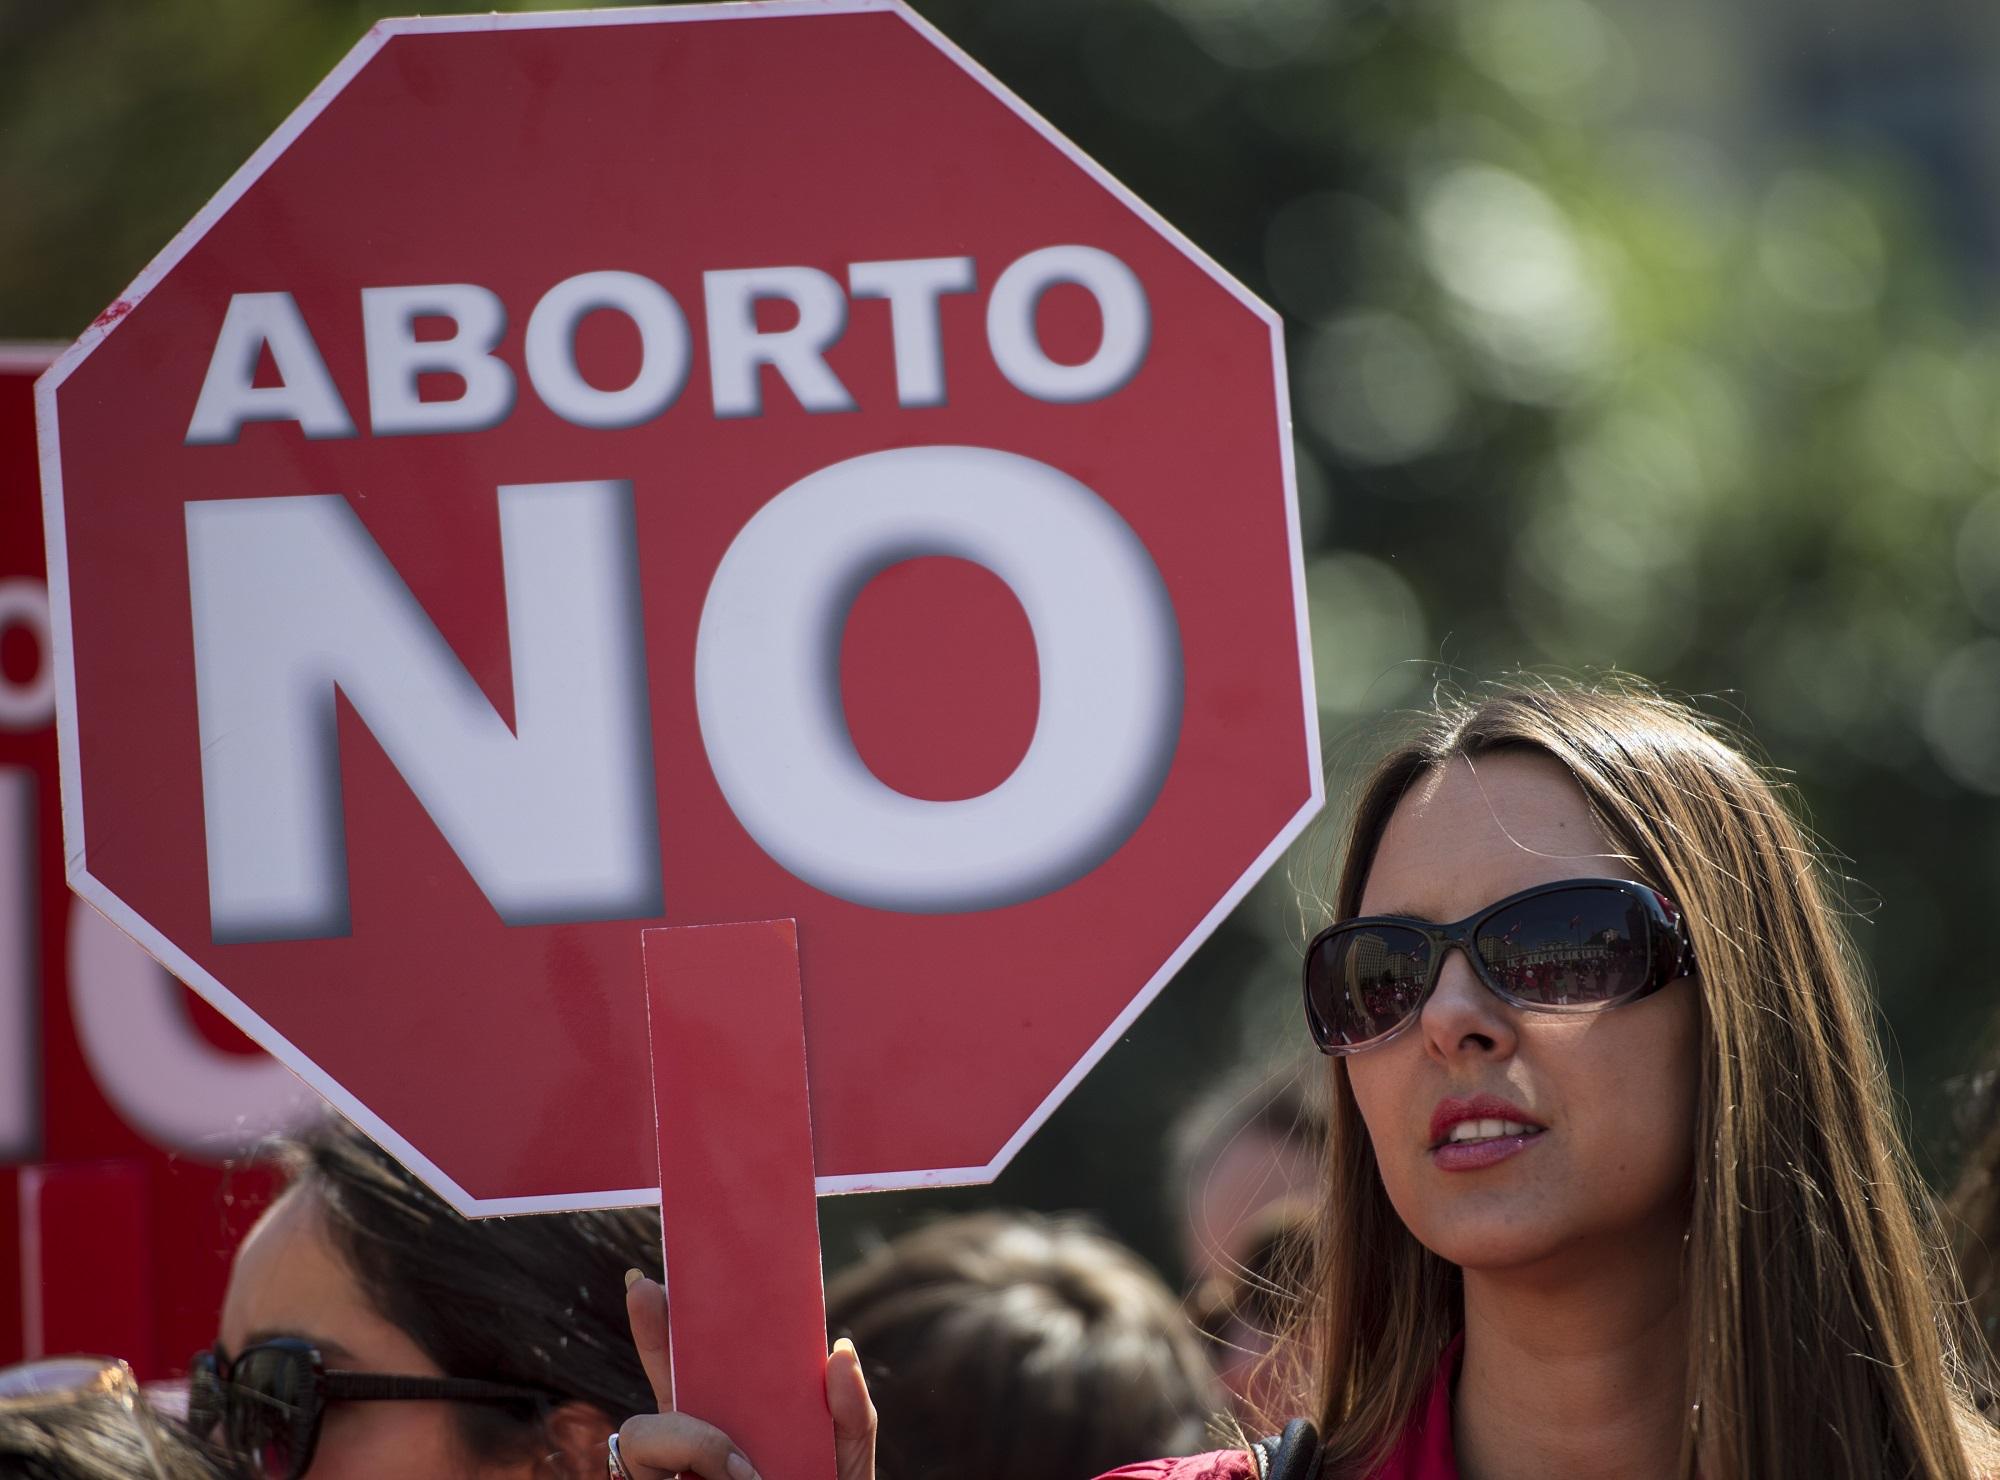 La ley que despenaliza el aborto terapéutico ha tenido que superar una fuerte oposición de los sectores más conservadores de la sociedad chilena, pero al final la mayoría de la clase política ha aprobado la normativa en las dos cámaras, Congreso y Senado. Foto Martín Bernetti (AFP).